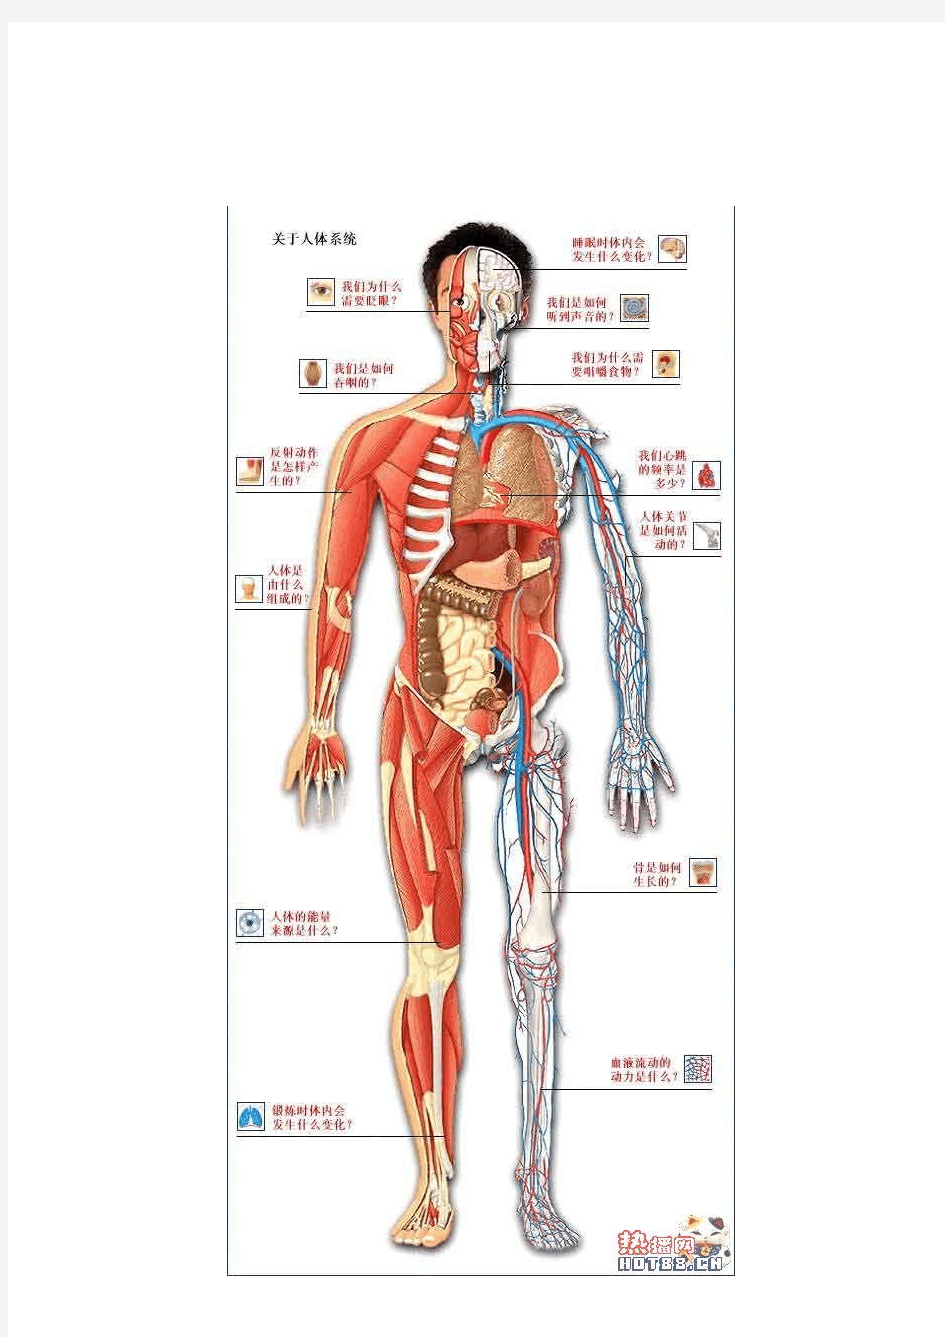 人体的九大系统-骨骼